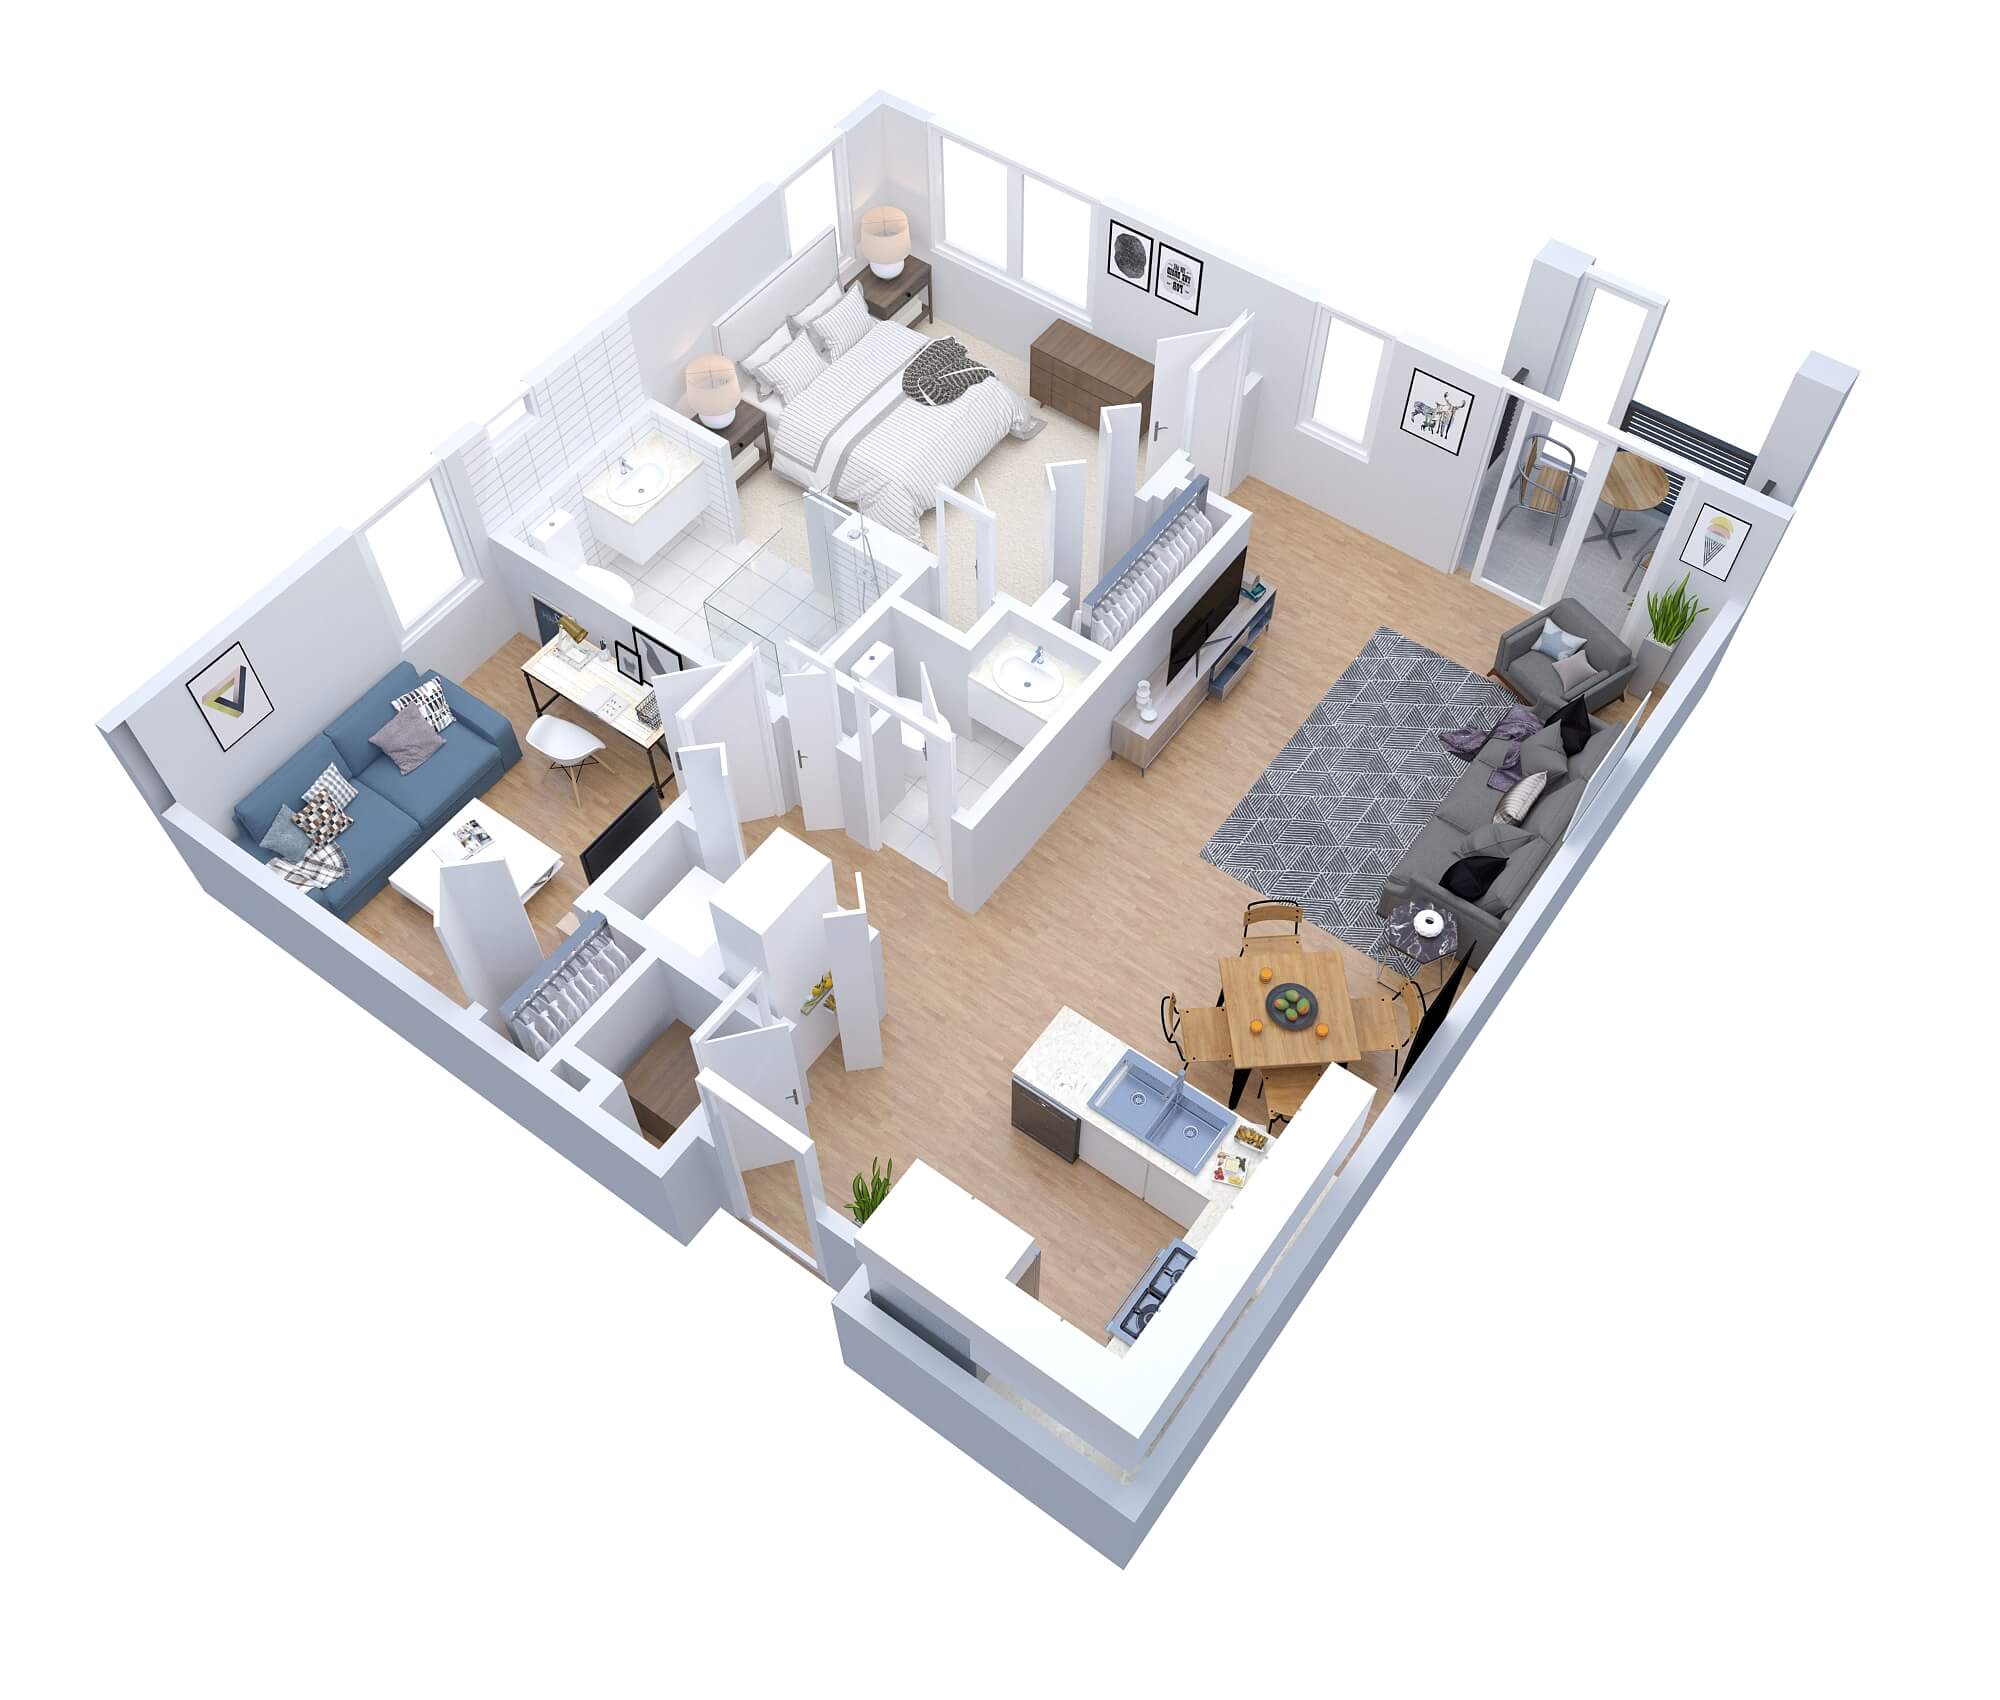 Bridgeport - senior living floor plan